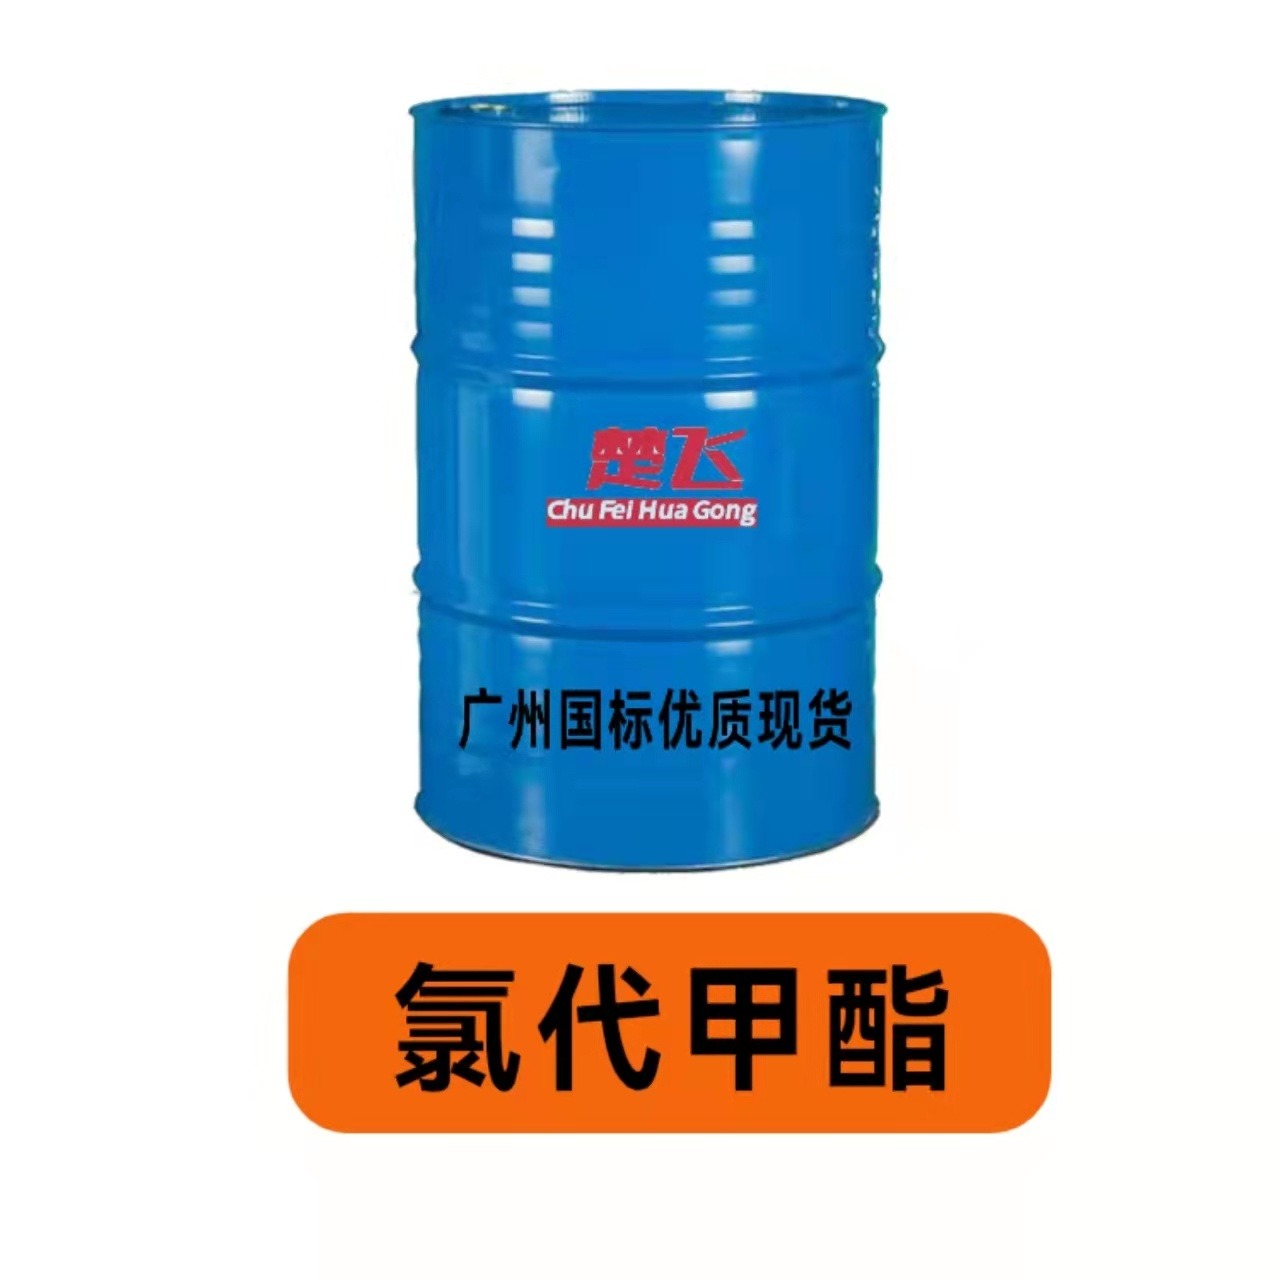 广州楚飞 氯代甲酯  高品质二辛脂 二丁酯替代品增塑剂 降低成本